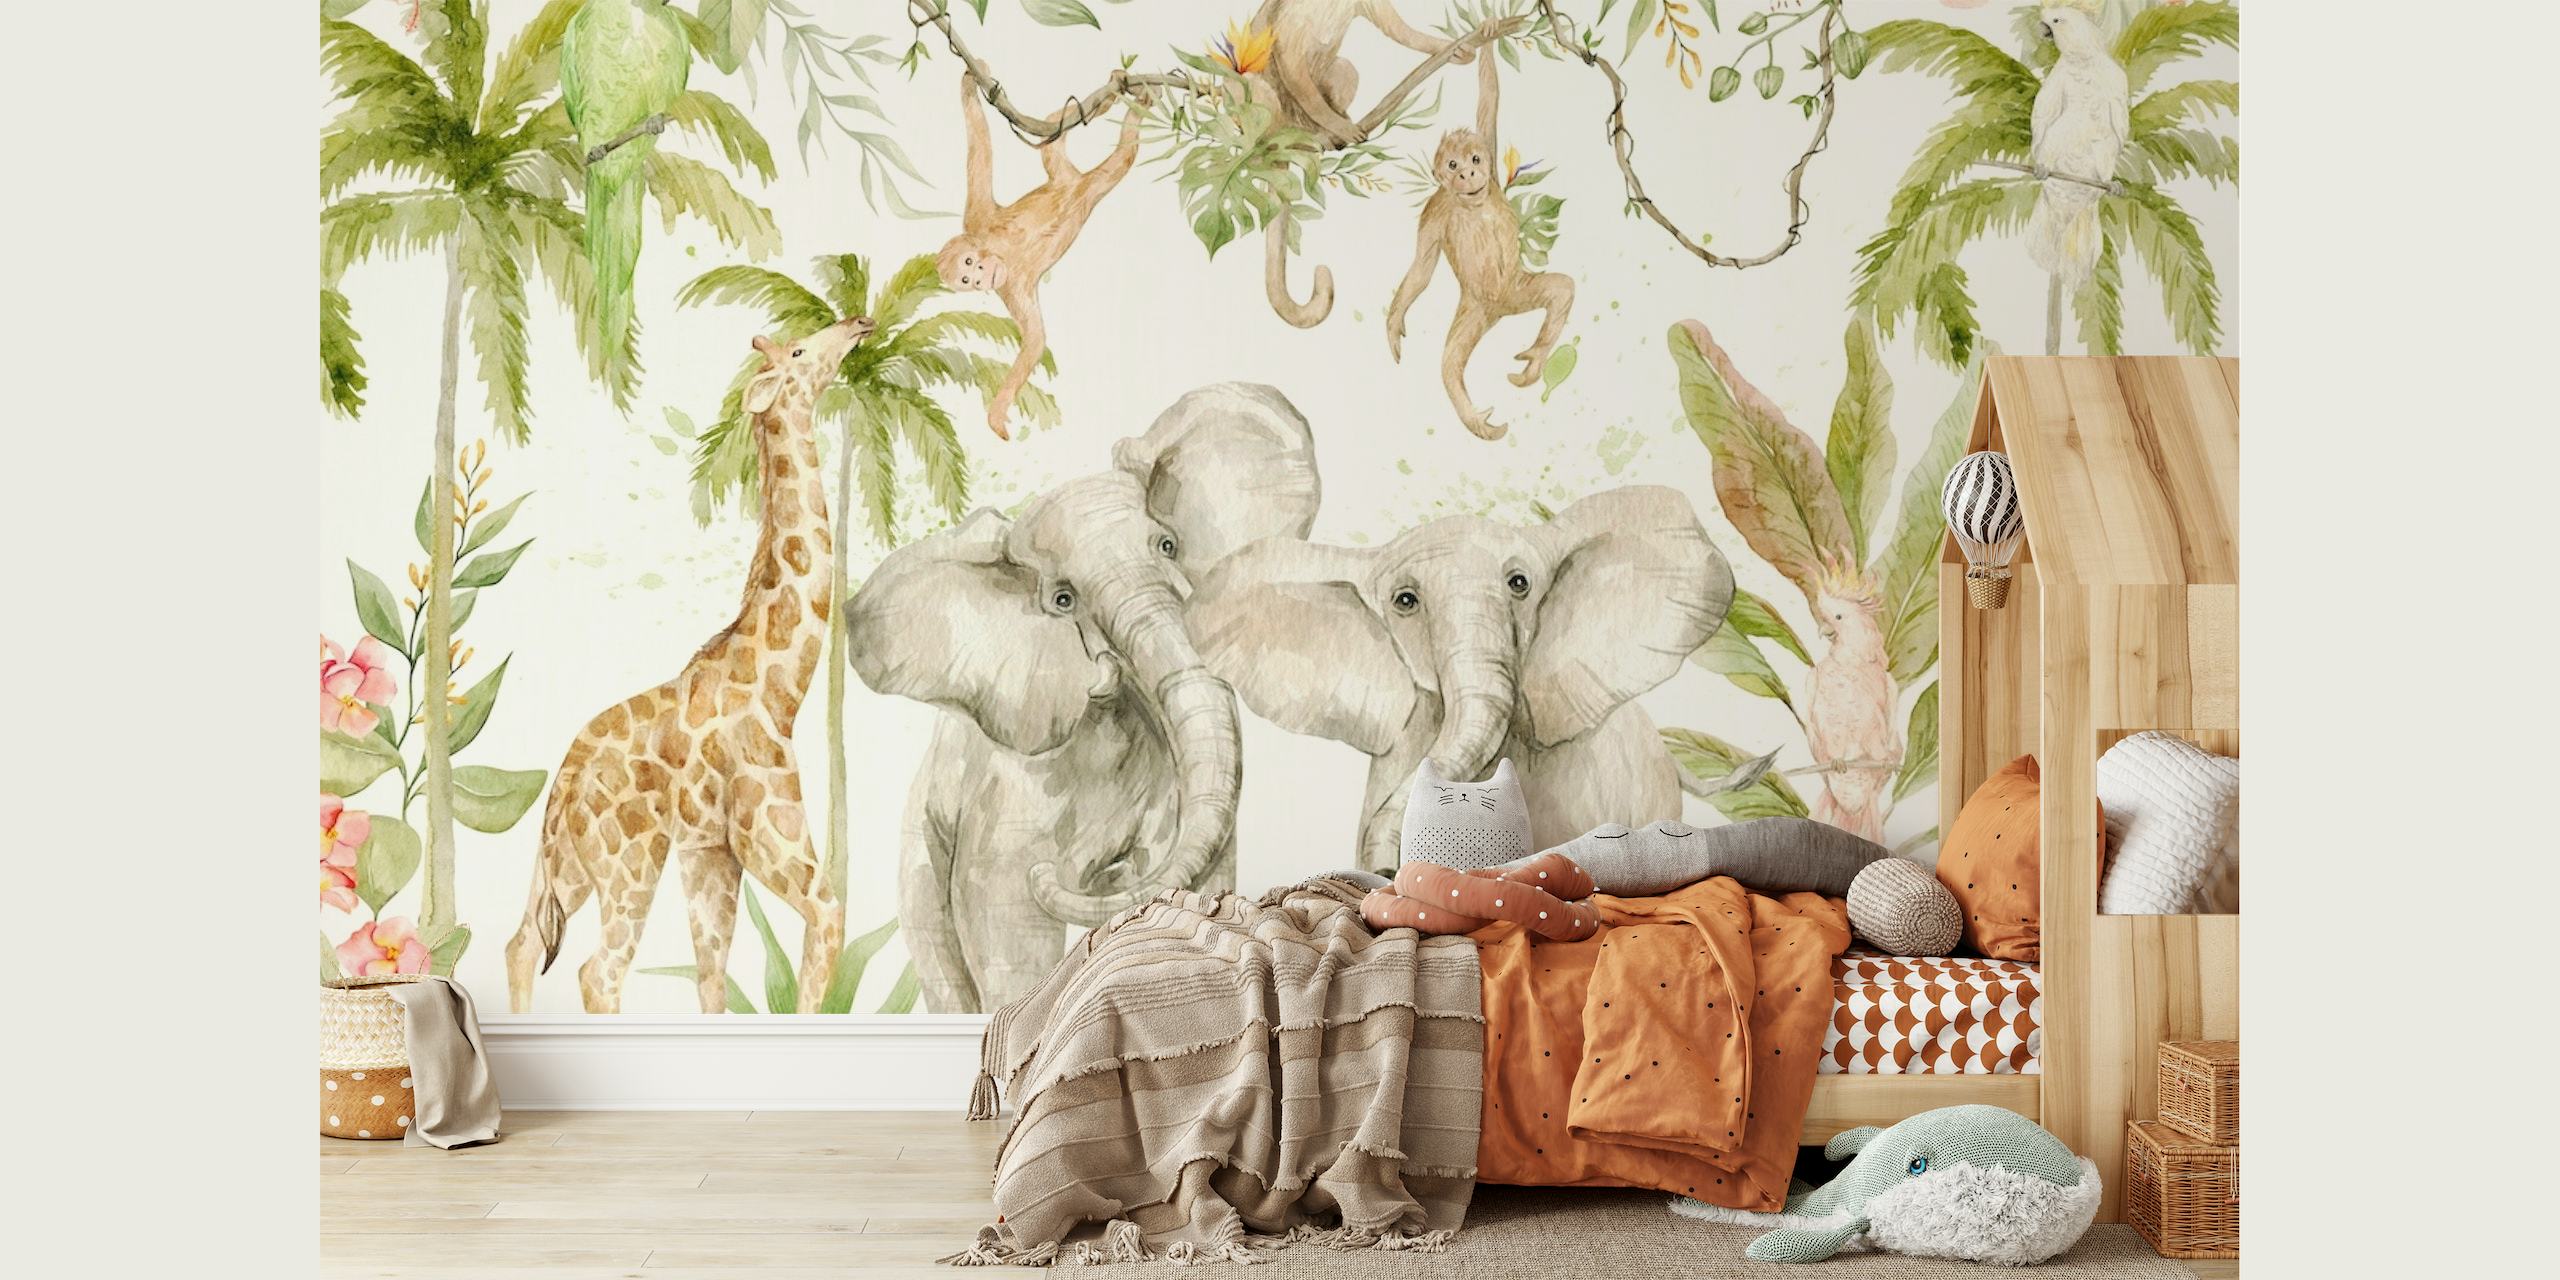 Met de hand geschilderde stijl muurschildering van een tropisch safari-jungletafereel met olifanten, giraffen en apen tussen het groen